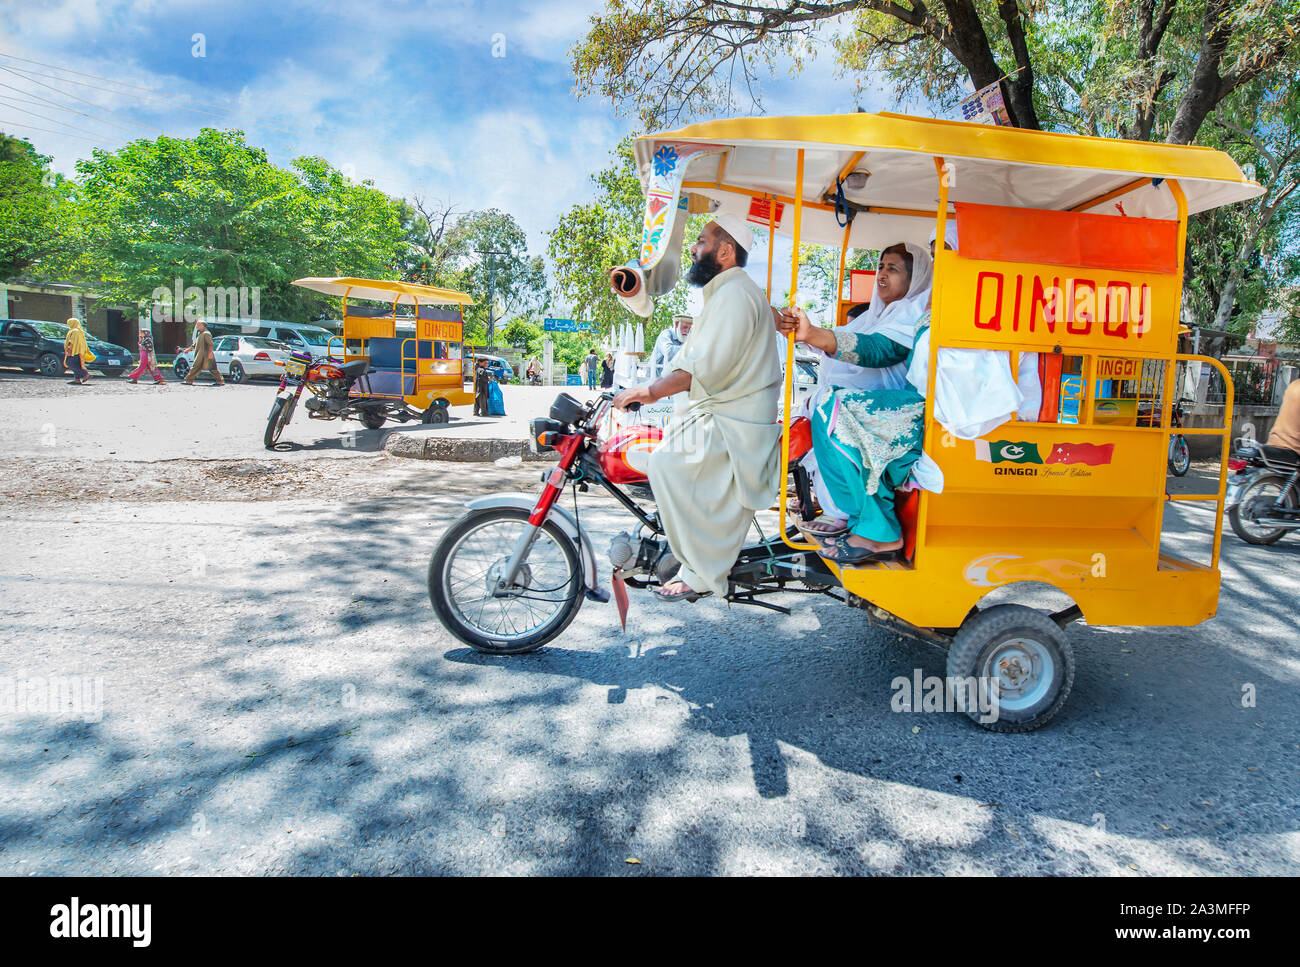 Qingqi, die chinesische Marke Motorrad fördert die Produkte in Pakistan durch die Anwendung als Dreiräder Modell für öffentliche Transport Service. Taxila, Paki Stockfoto